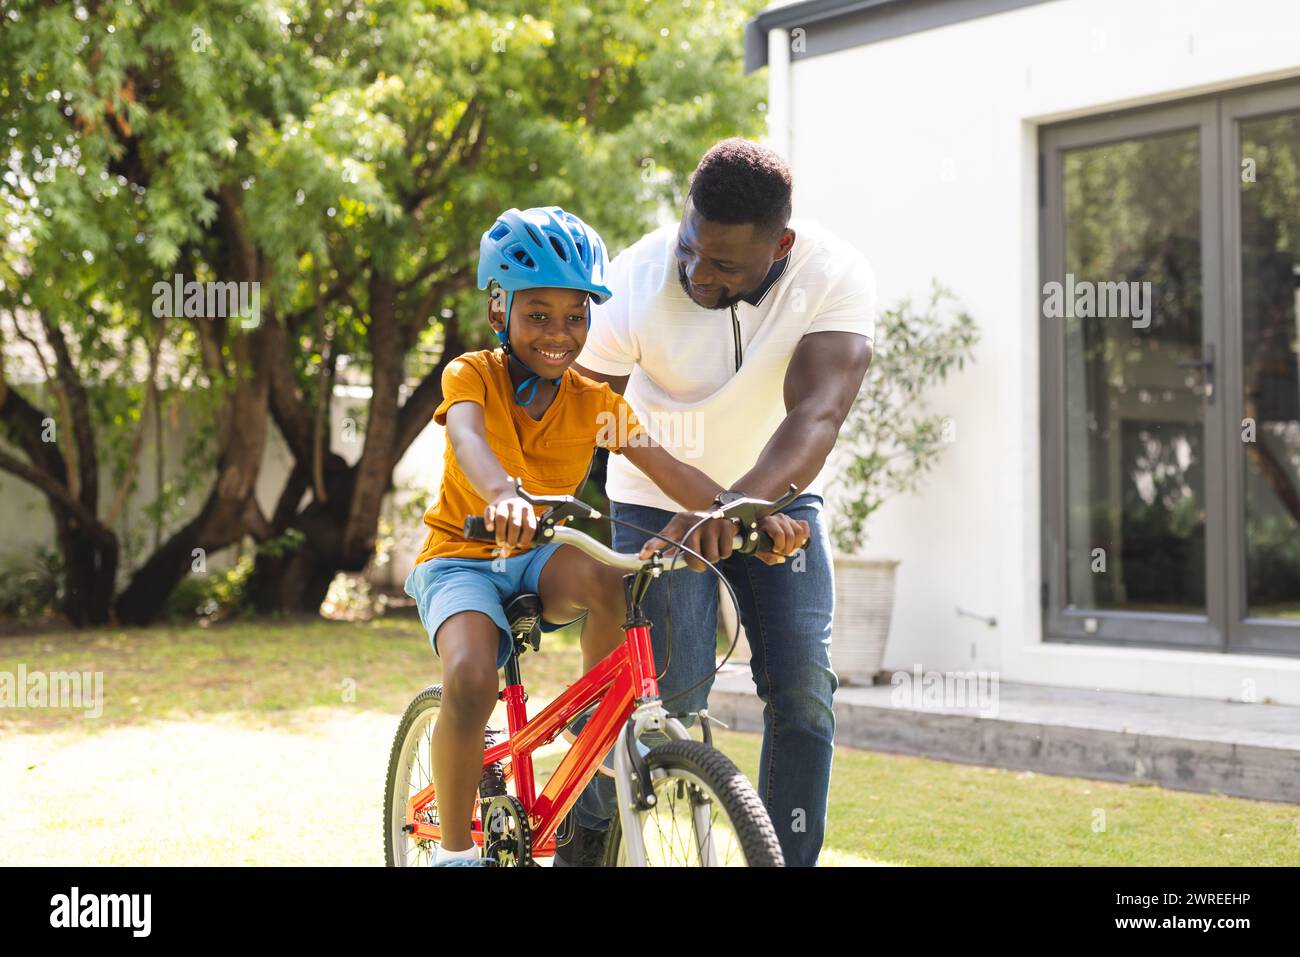 Der afroamerikanische Vater hilft seinem Sohn, in einem sonnigen Hinterhof Fahrrad zu fahren Stockfoto